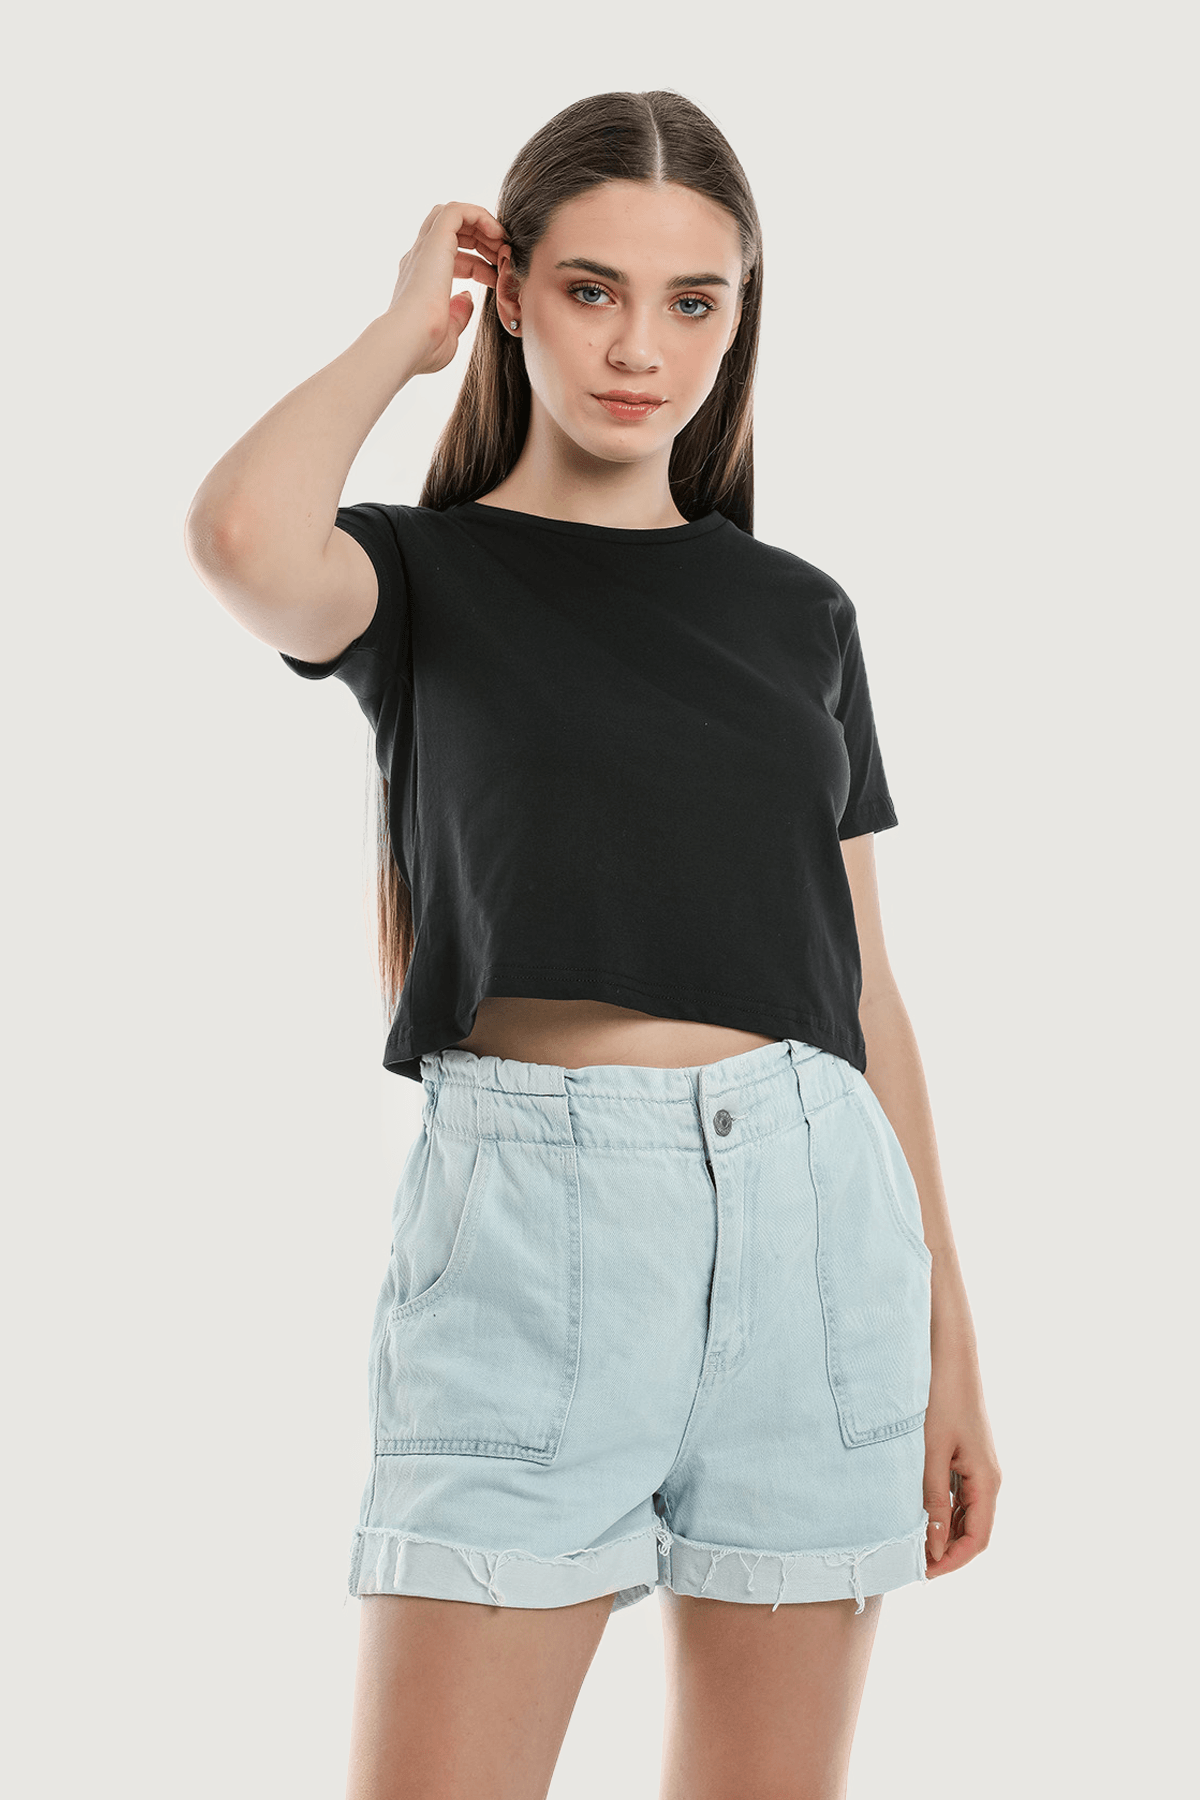 Camiseta básica corta de cuello de bicicleta en negro para mujer